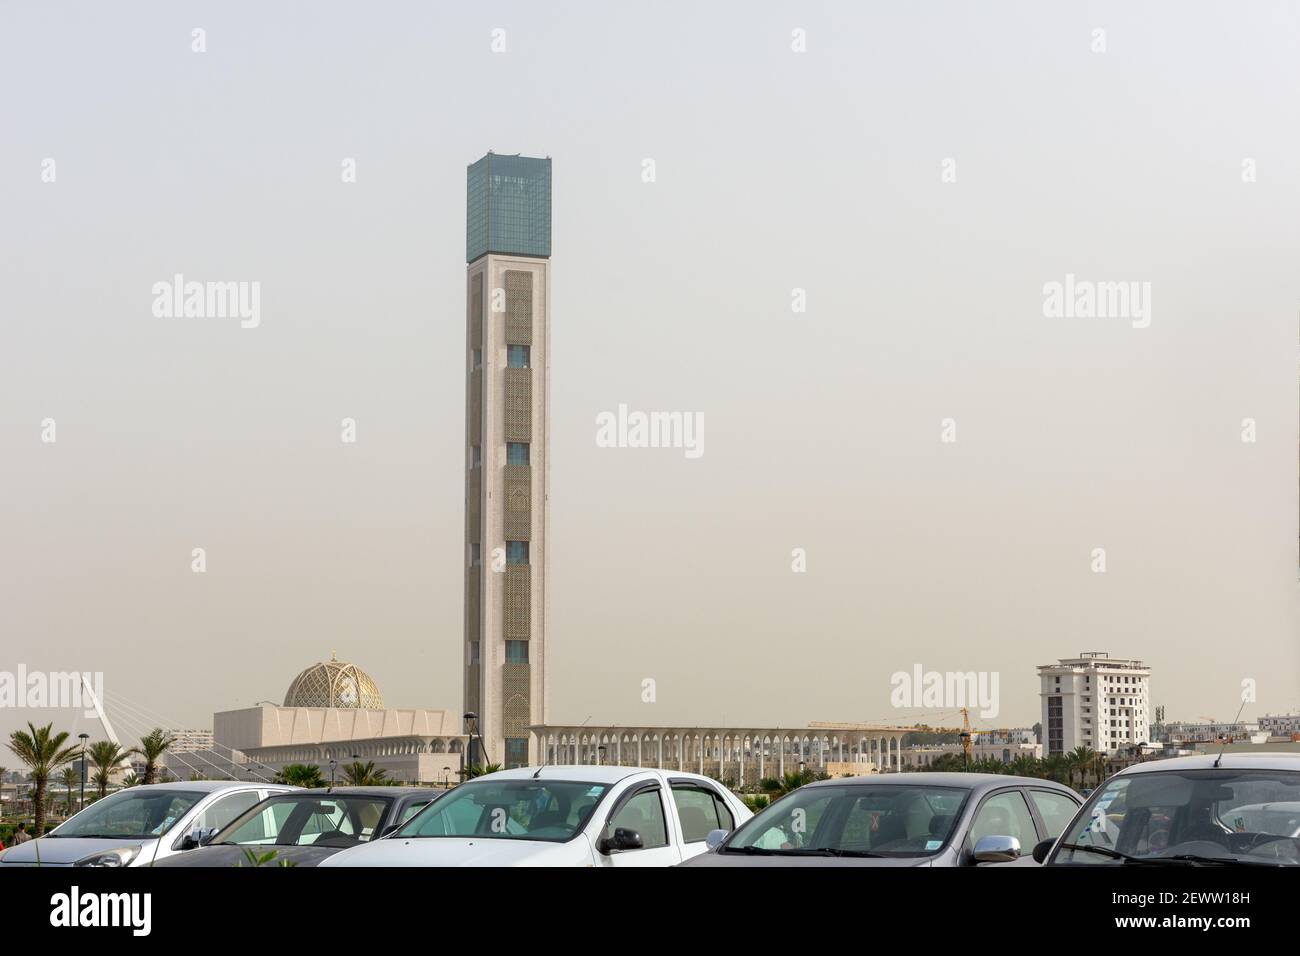 Minaret de la Grande Mosquée d'Alger, le plus haut minaret du monde, troisième plus grande mosquée du monde Banque D'Images